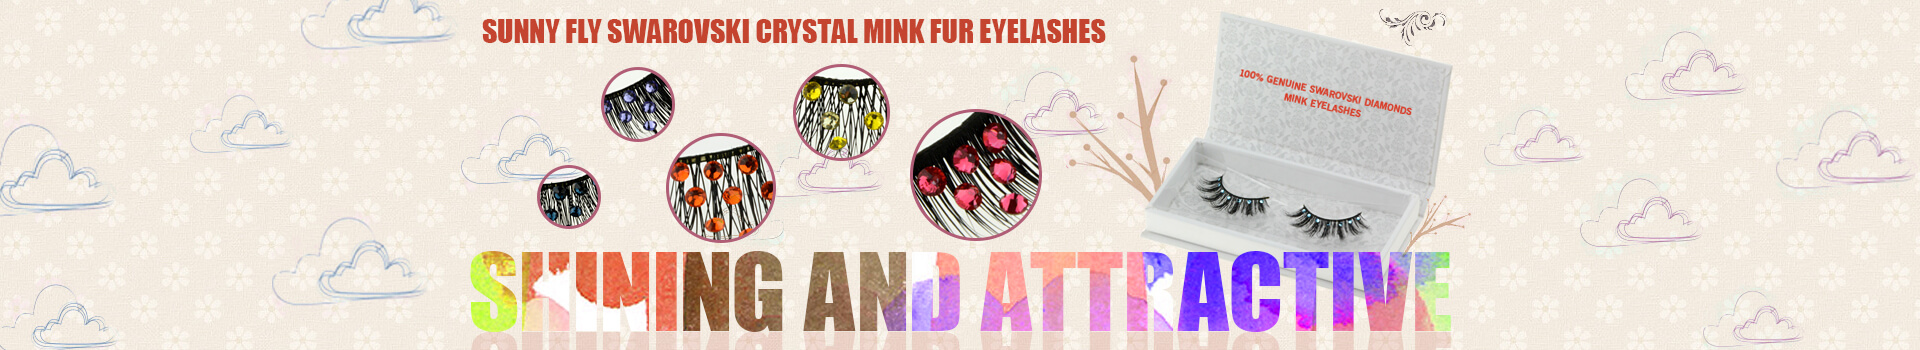 Swarovski Crystal Mink Fur Eyelashes MS40